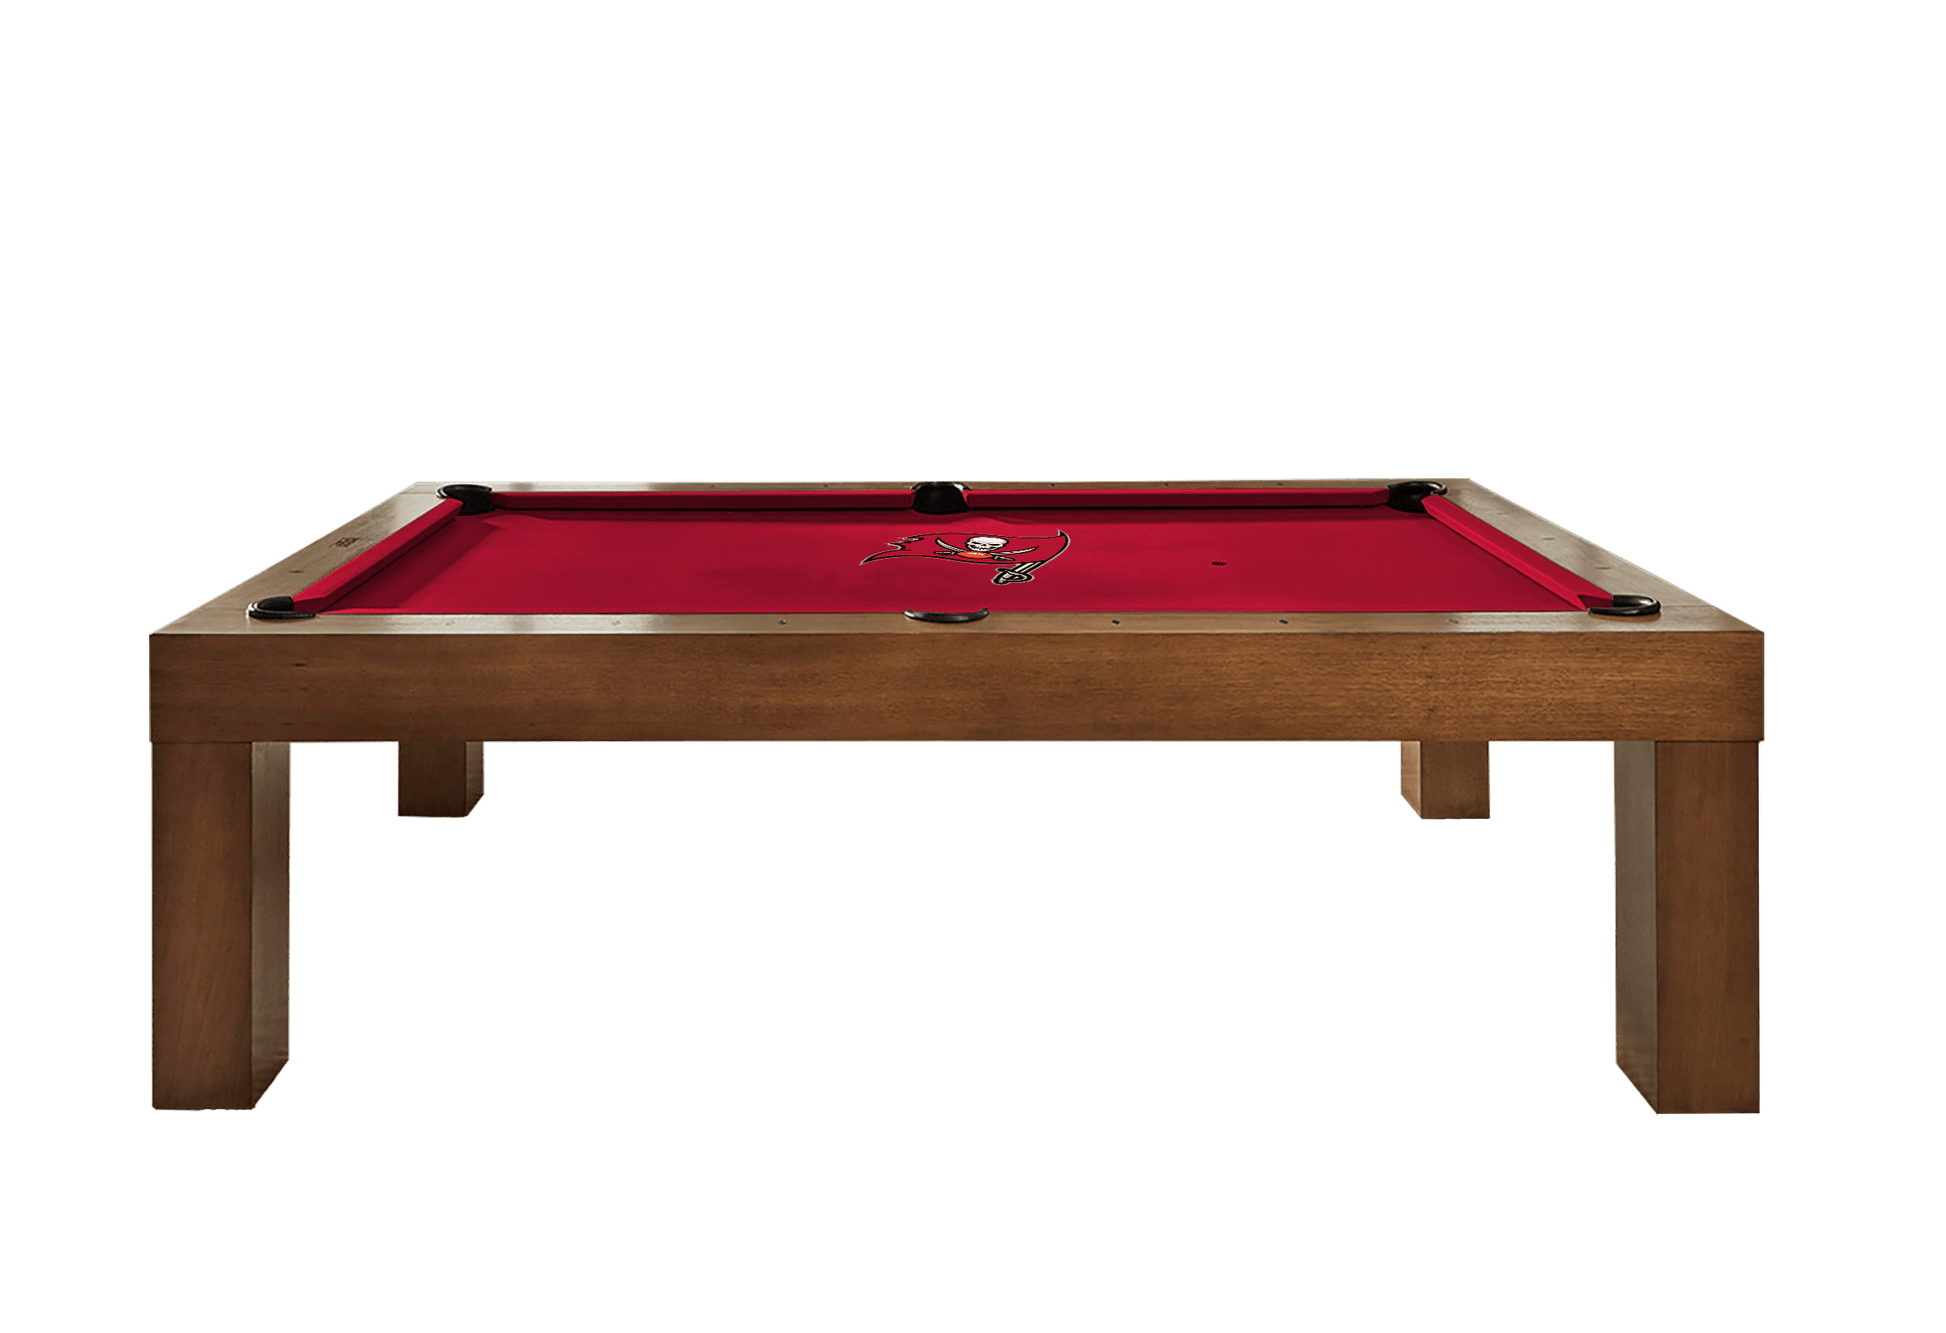 Tampa Bay Buccaneers Premium Pool Table Bundle - Walnut Pool Bundle Home Arcade Games   